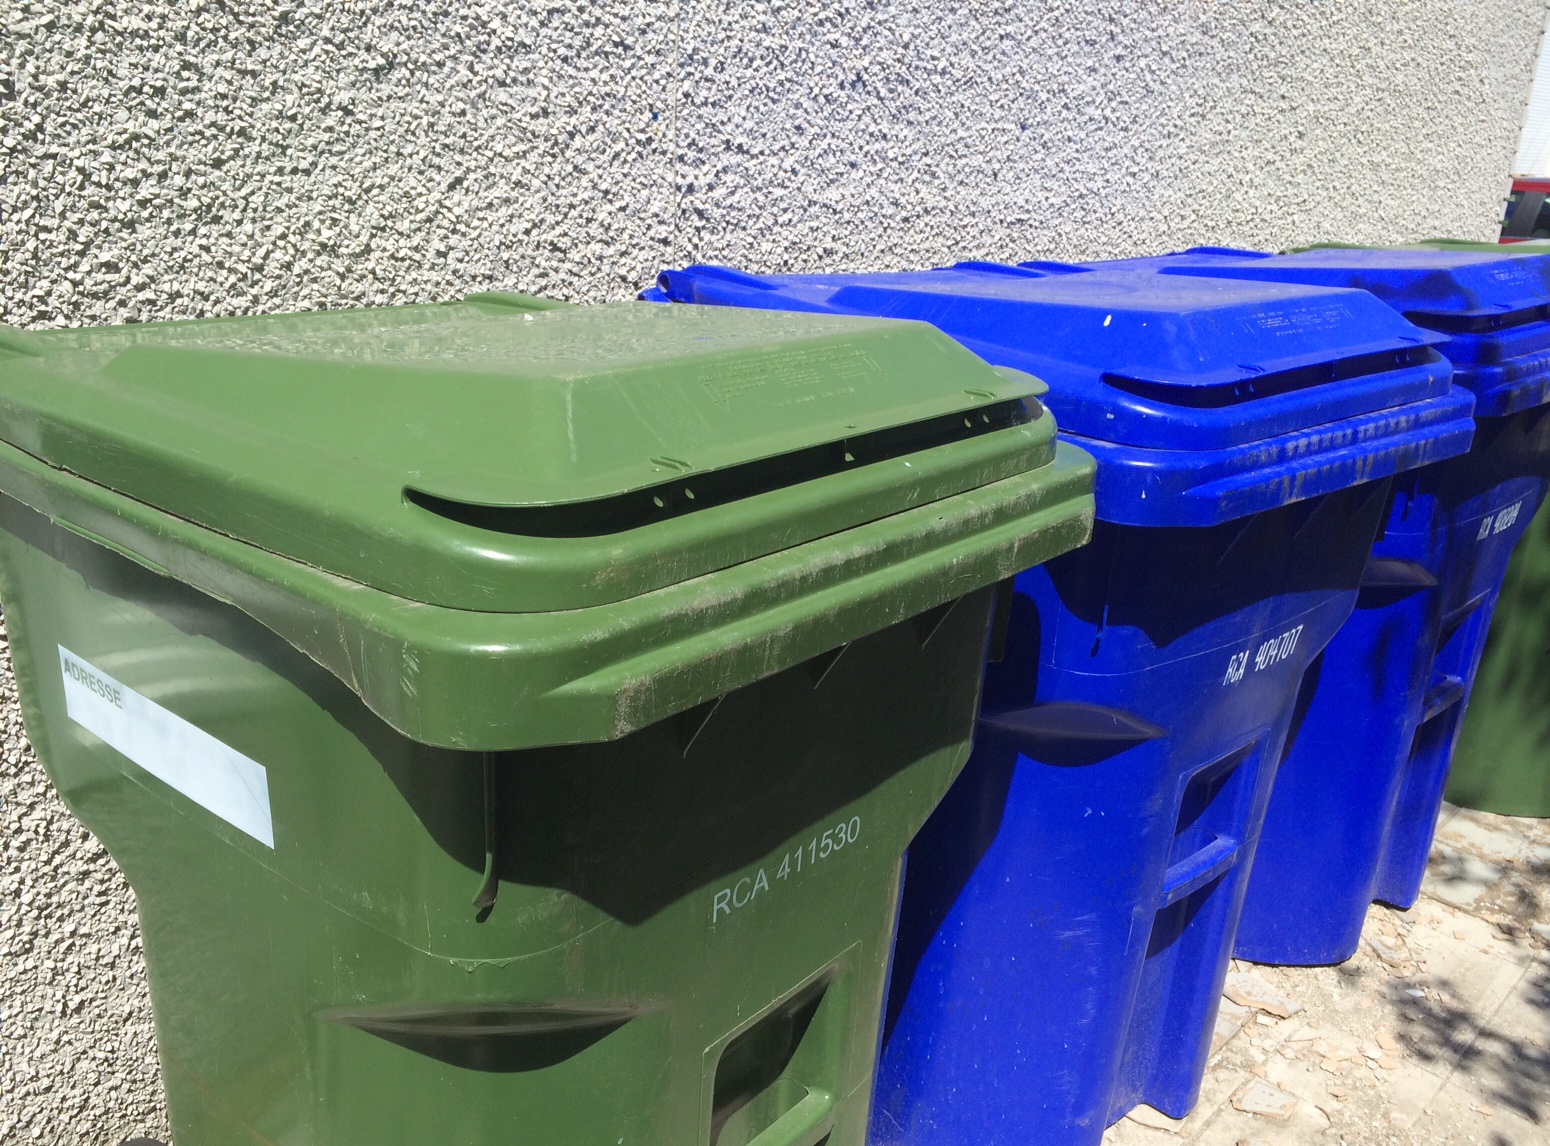 Collecte des matières recyclables : en septembre, le bac bleu sera